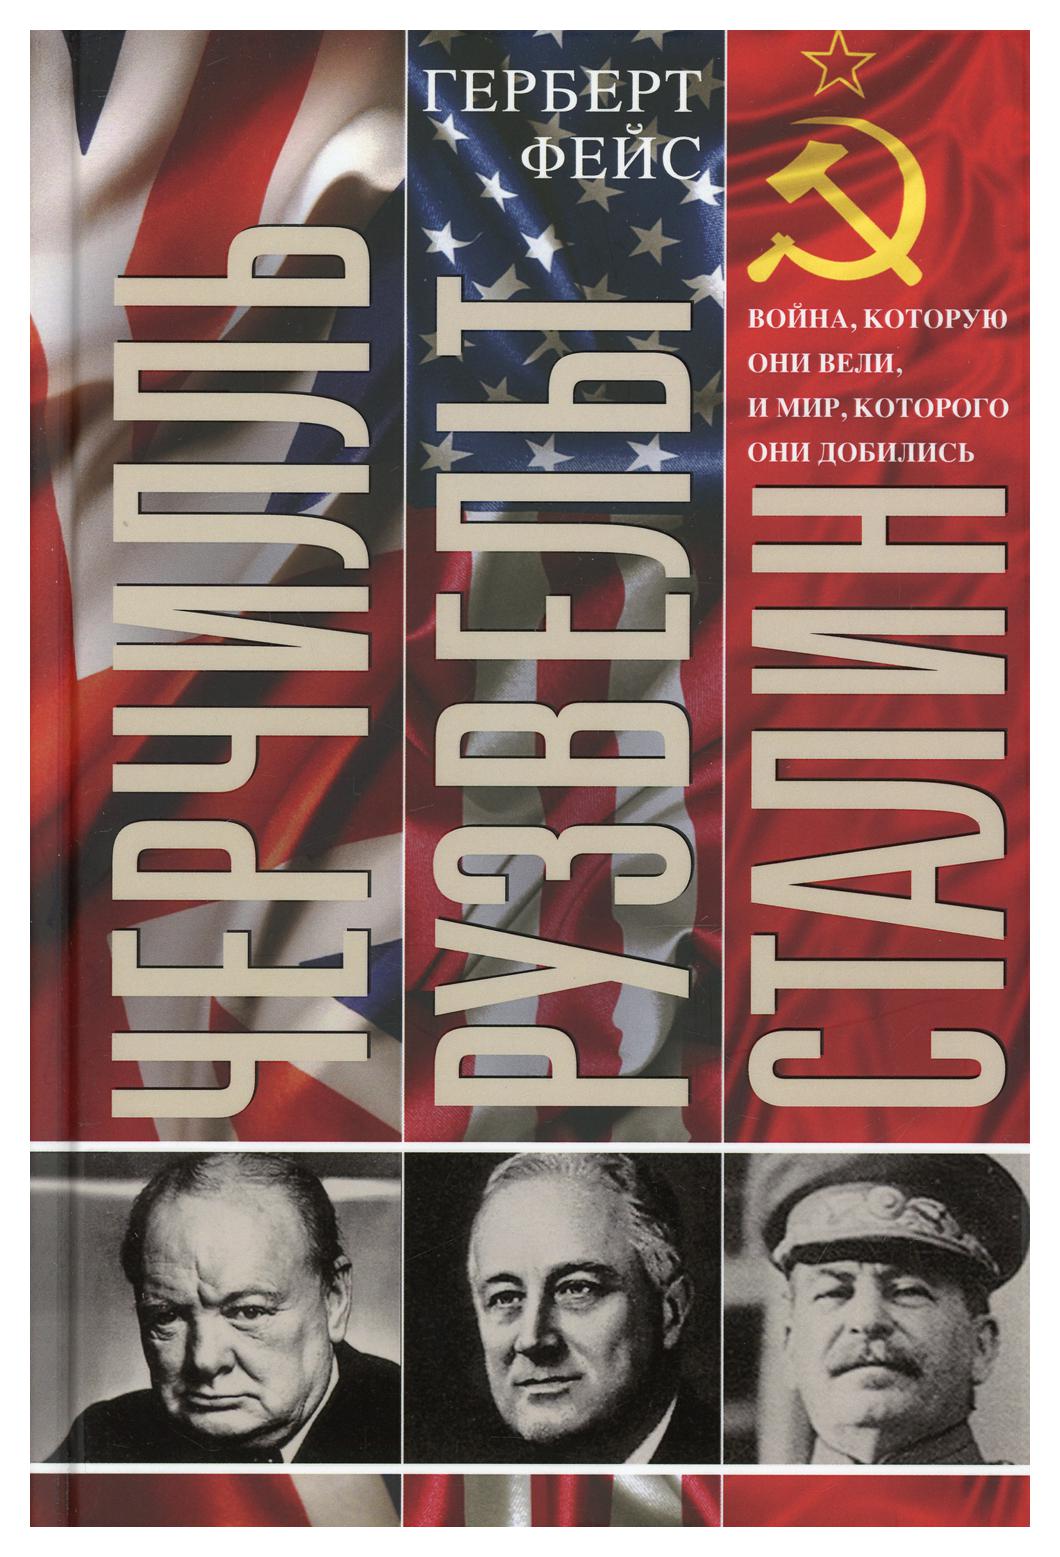 фото Книга черчилль. рузвельт. сталин. война, которую они вели, и мир, которого они добились центрполиграф